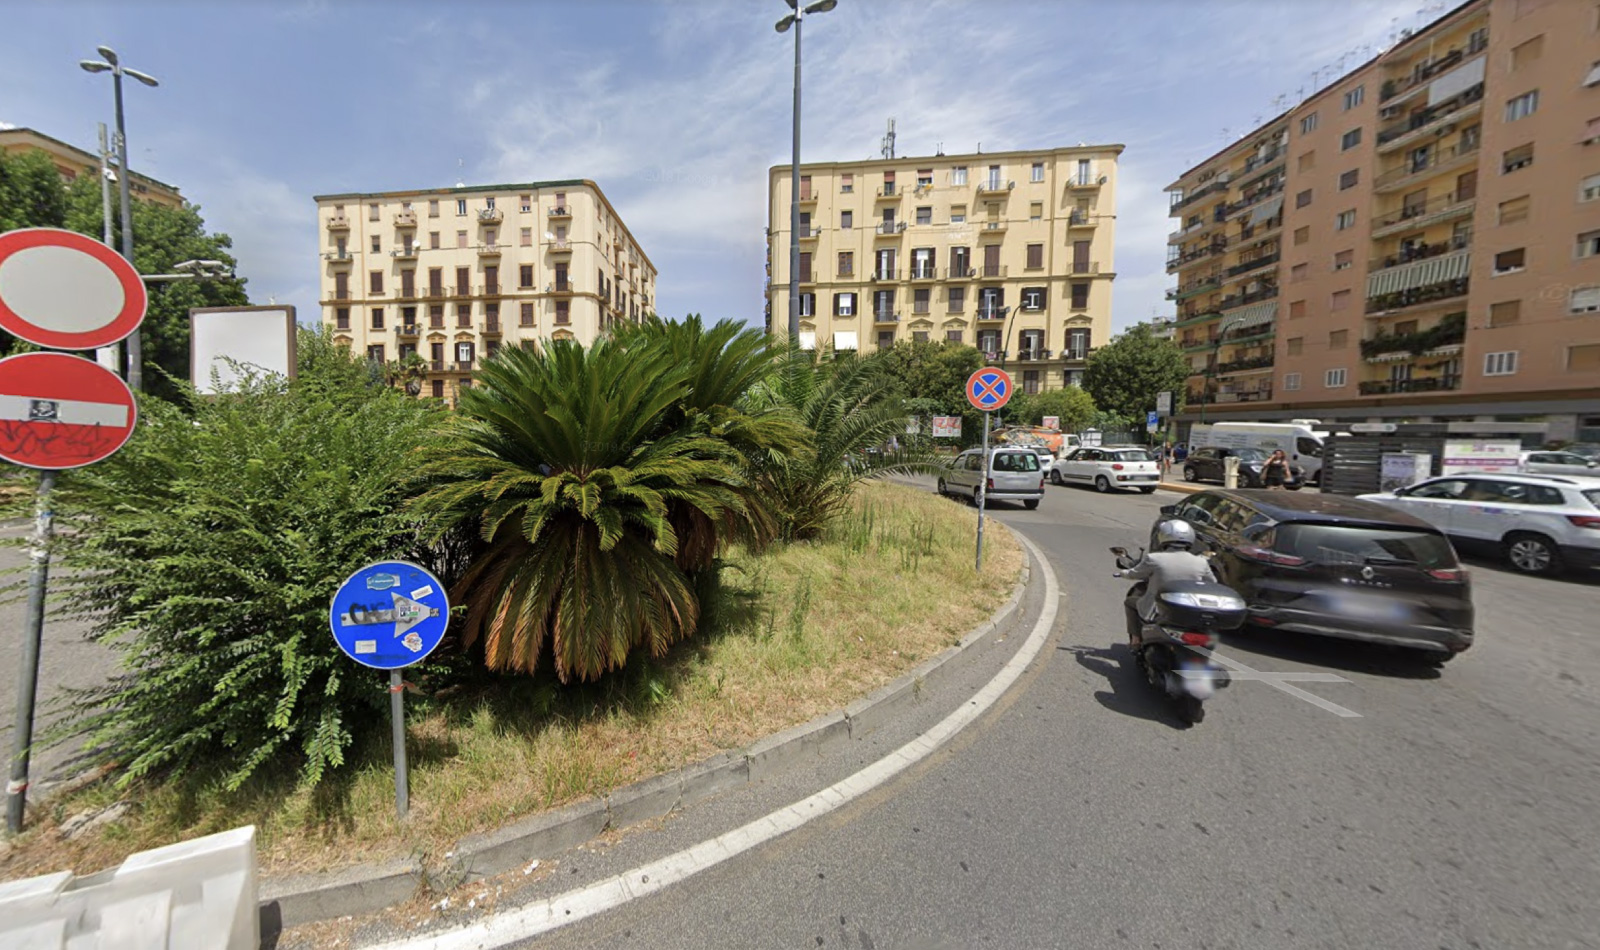 Foto de Piazza degli Artisti en Nápoles tomada de google maps